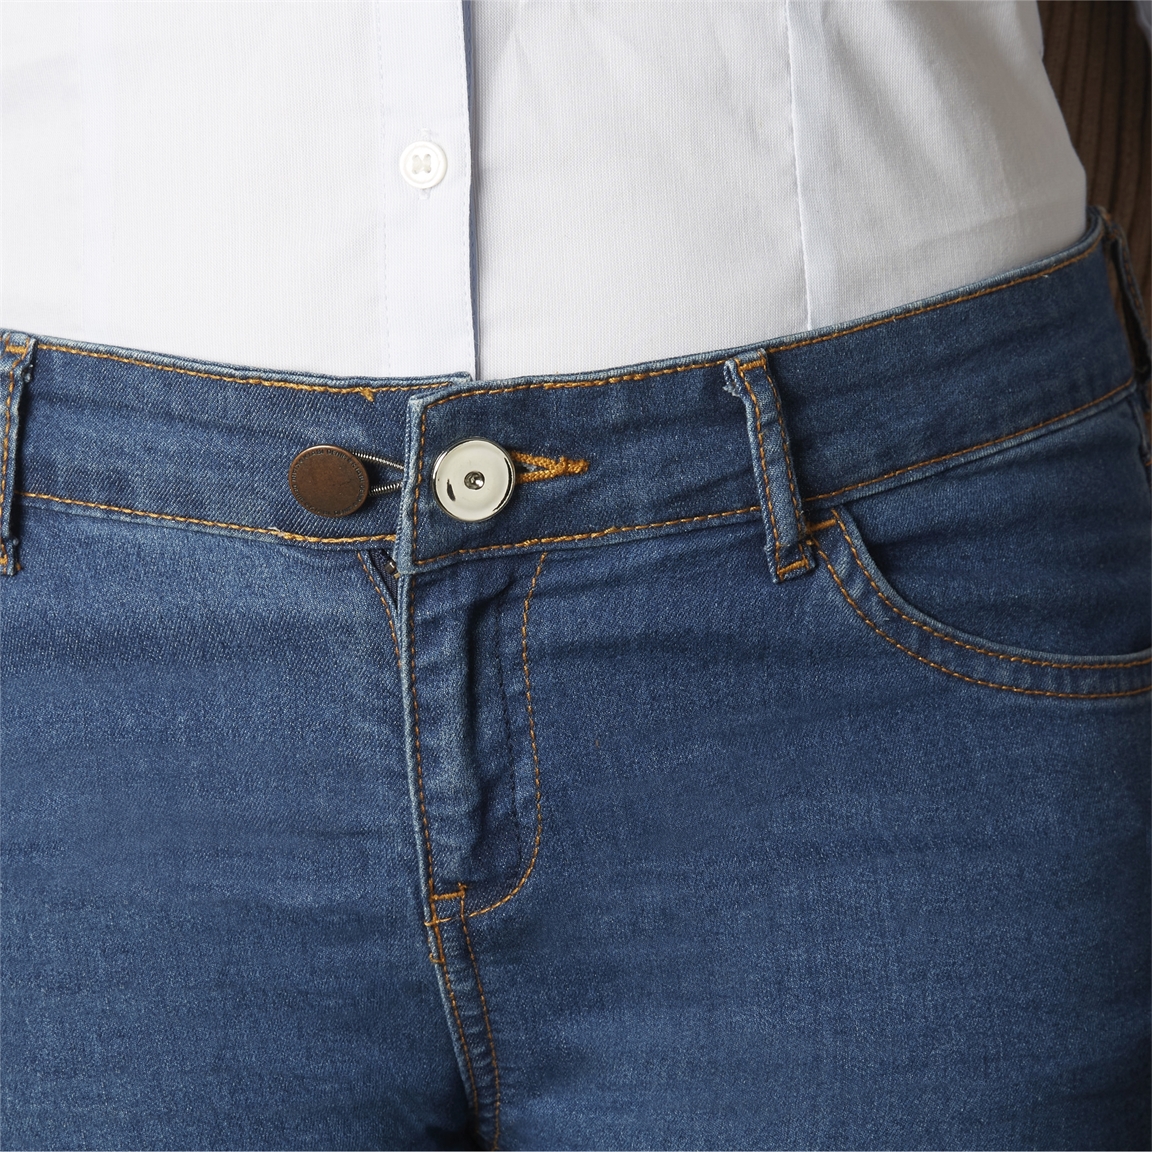 Bouton d'extension de jeans 3 pièces - 5 cm - rallonge de bouton - bouton  de réglage - jean trop serré - boutons miracles - élargissement de pantalon